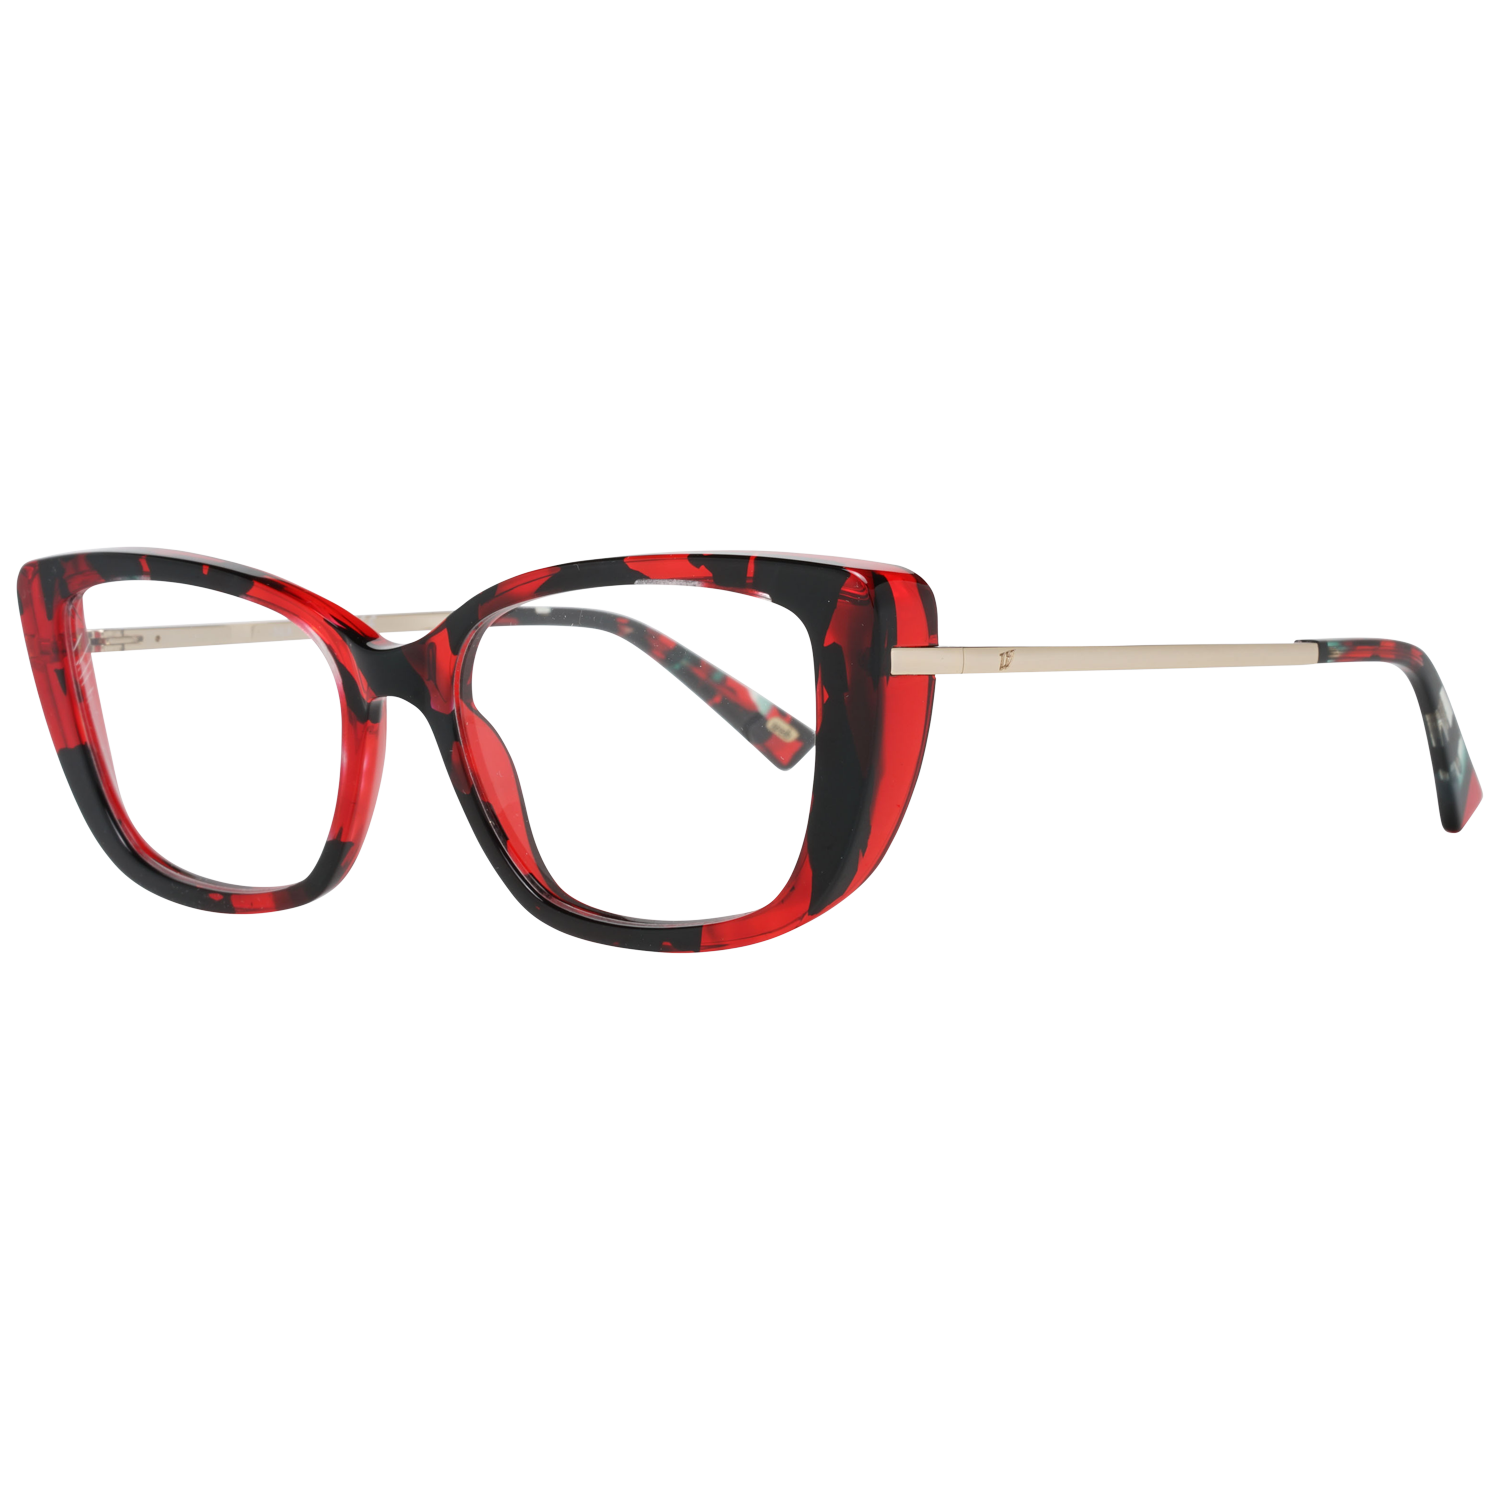 Web Frames Web Glasses Optical Frame WE5289 055 52 Eyeglasses Eyewear UK USA Australia 